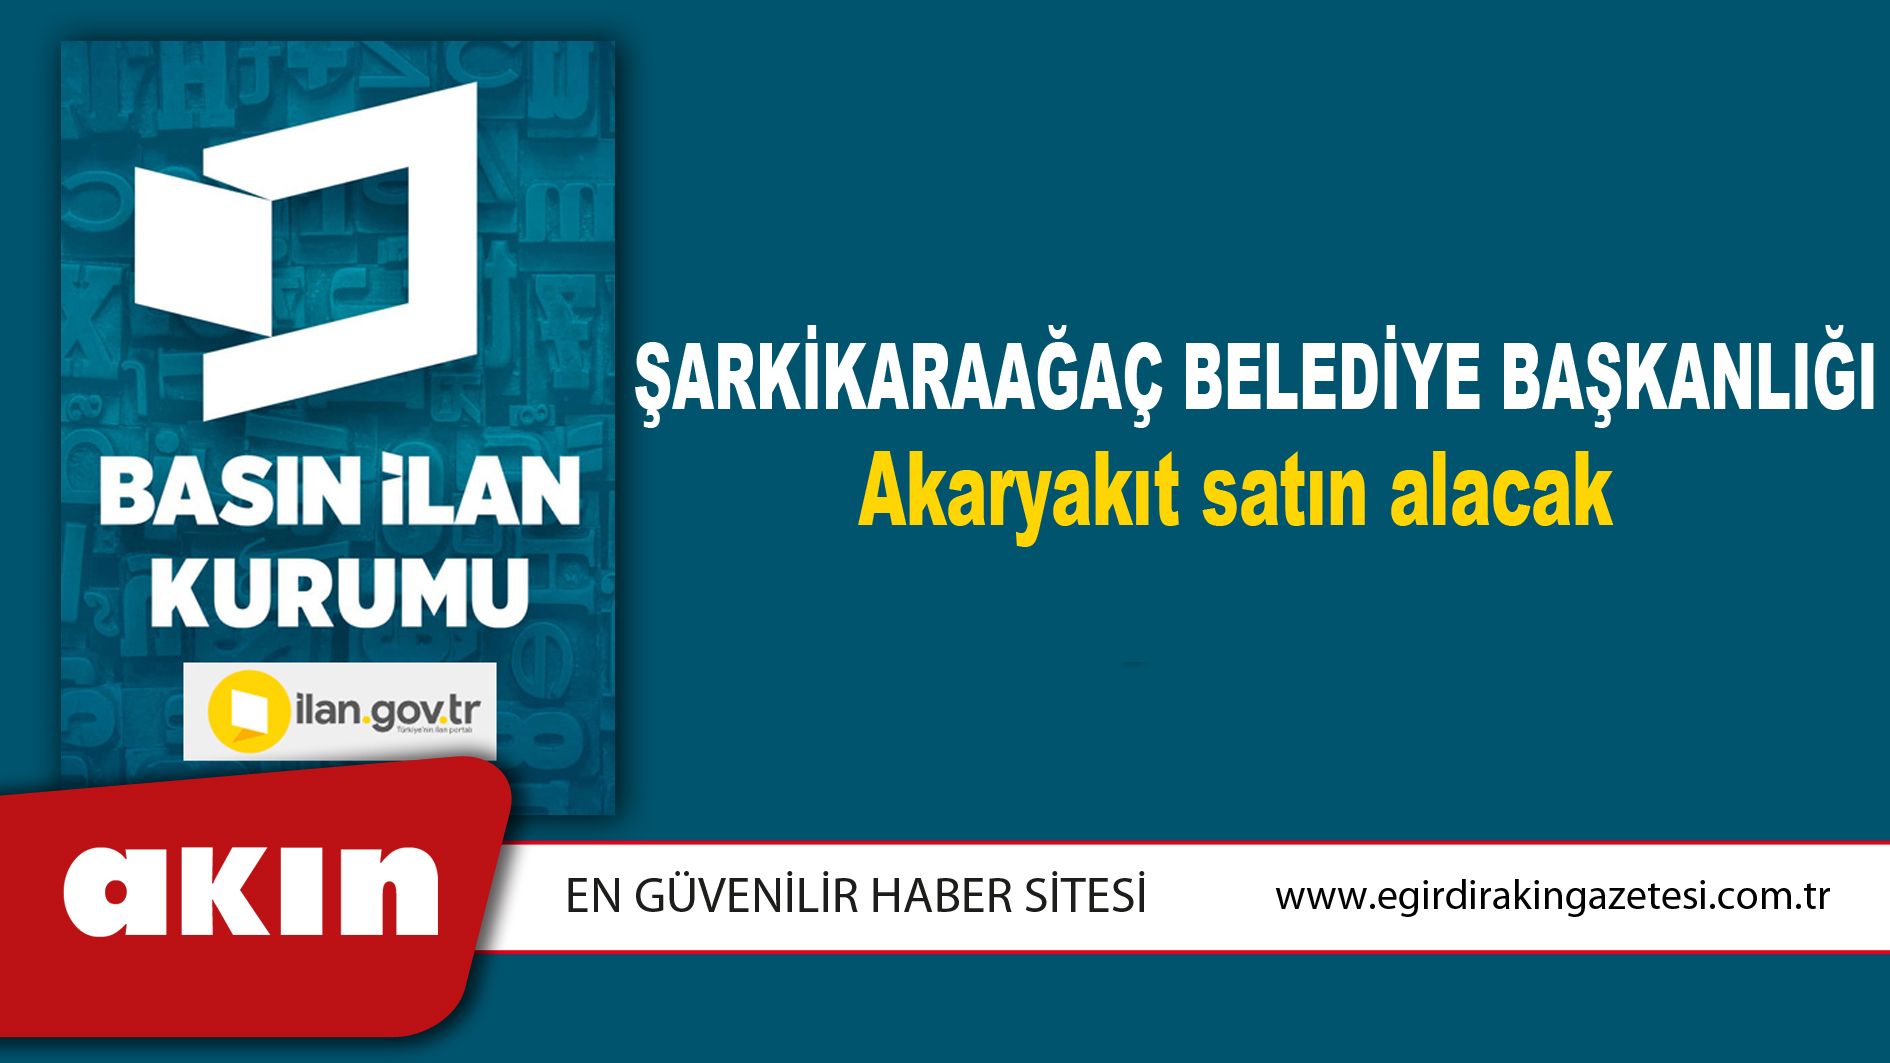 Şarkikaraağaç Belediye Başkanlığı Akaryakıt satın alacak